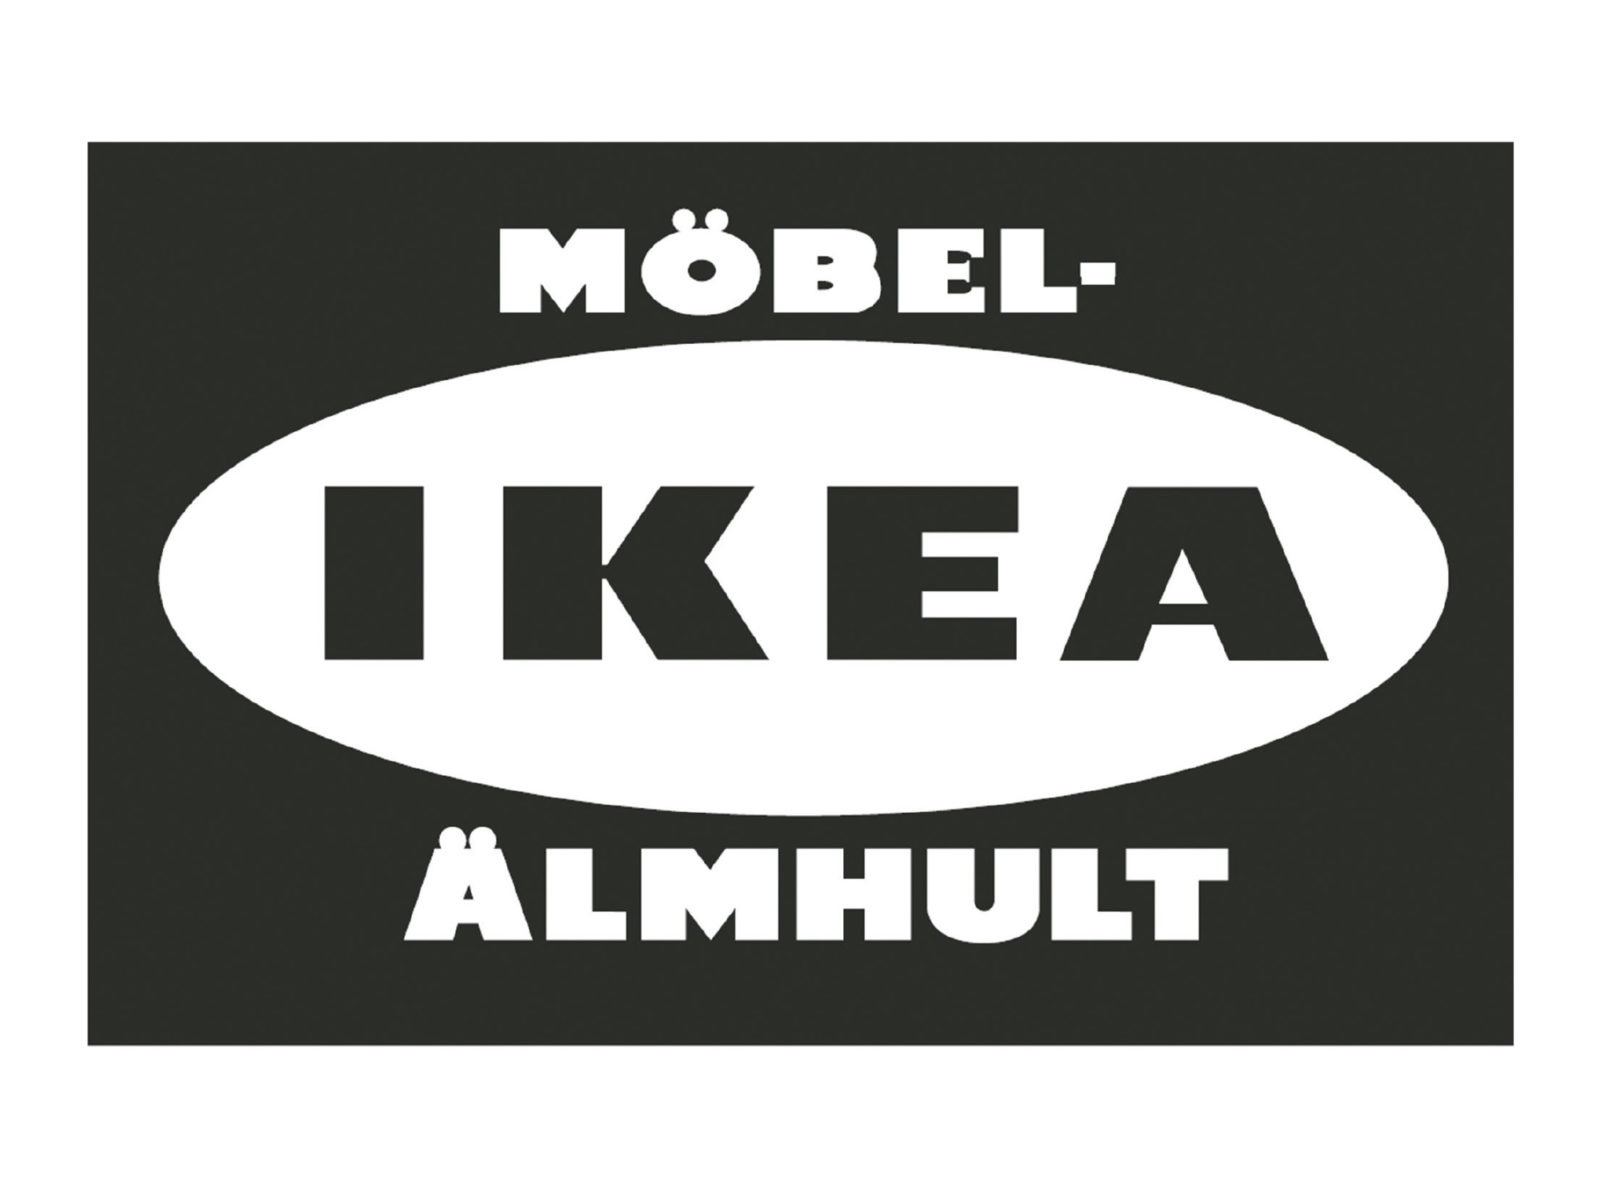 IKEA står med svarta versaler på vit oval mot svart bakgrund. Ovanför ovalen står MÖBEL- och under den står det ÄLMHULT.